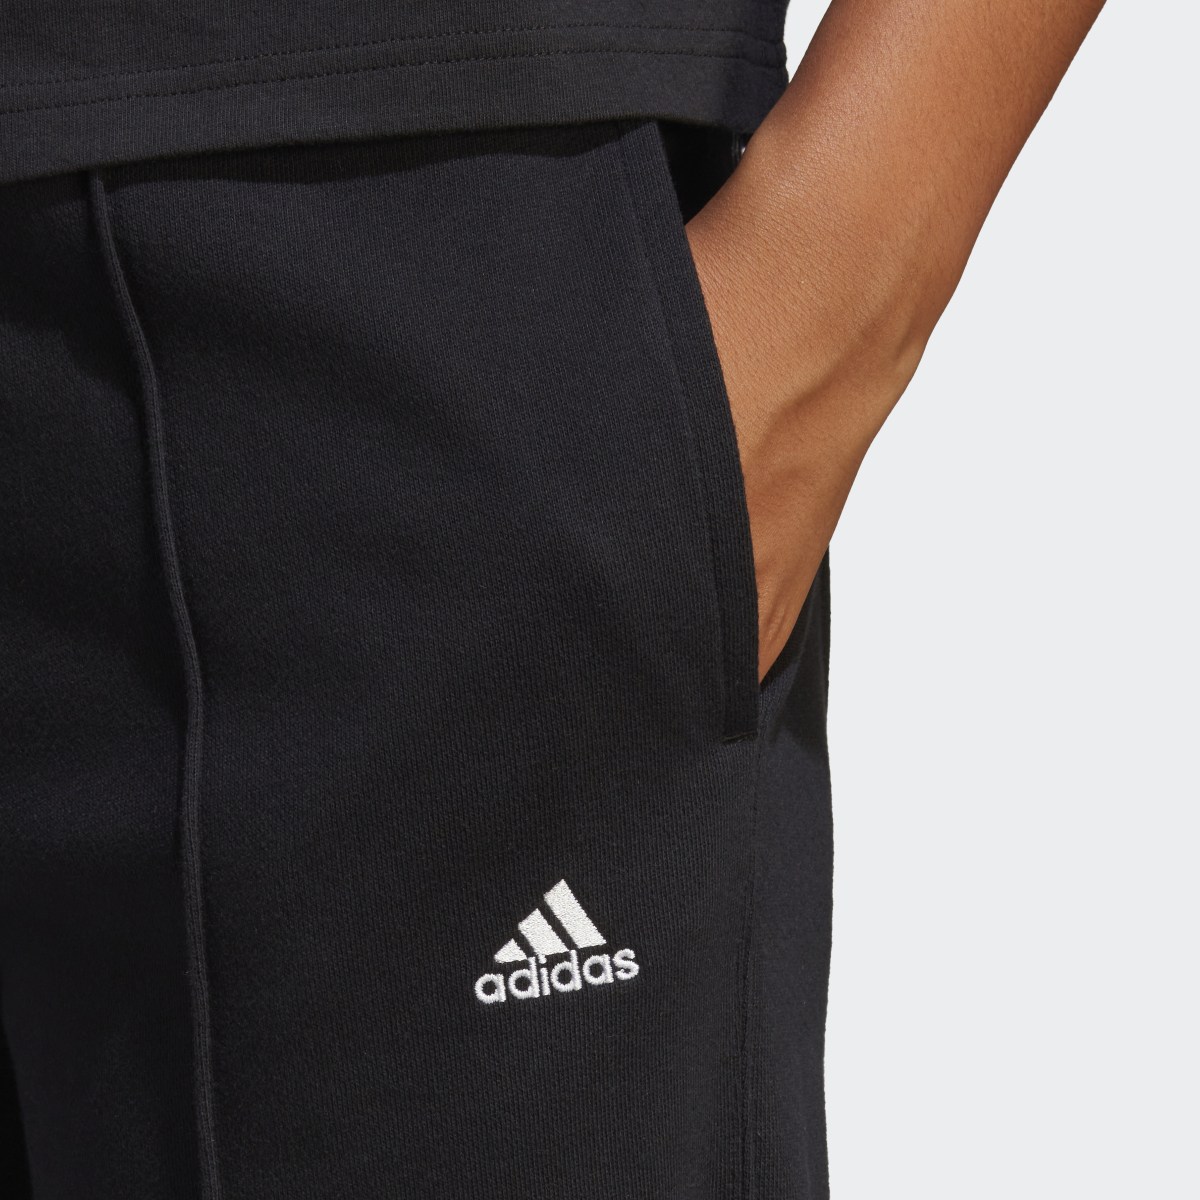 Adidas Pantalon sportswear avec graphismes inspirés de la lithothérapie. 6